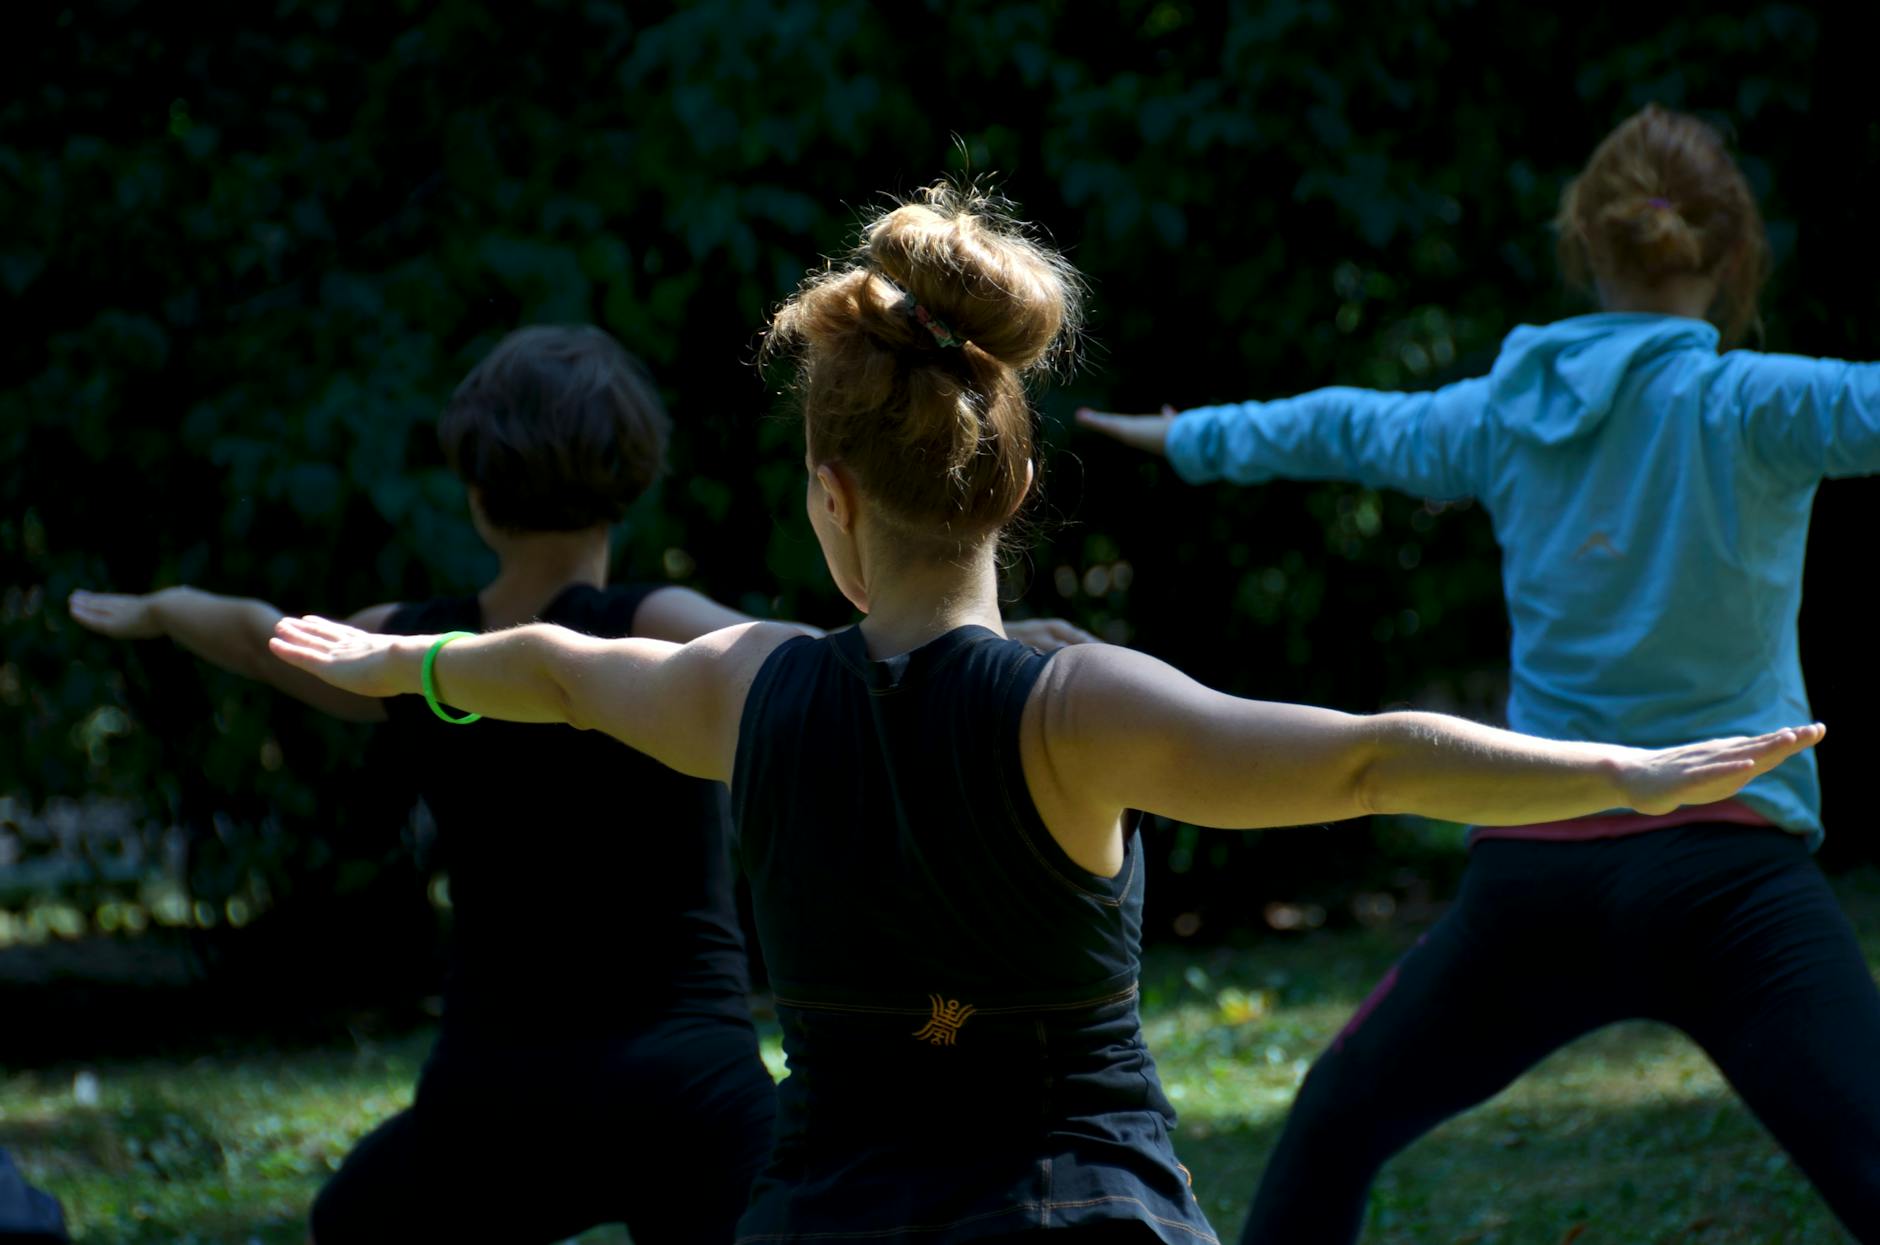 Mujeres irreconocibles realizando la asana Warrior II durante una clase de yoga al aire libre en el parque